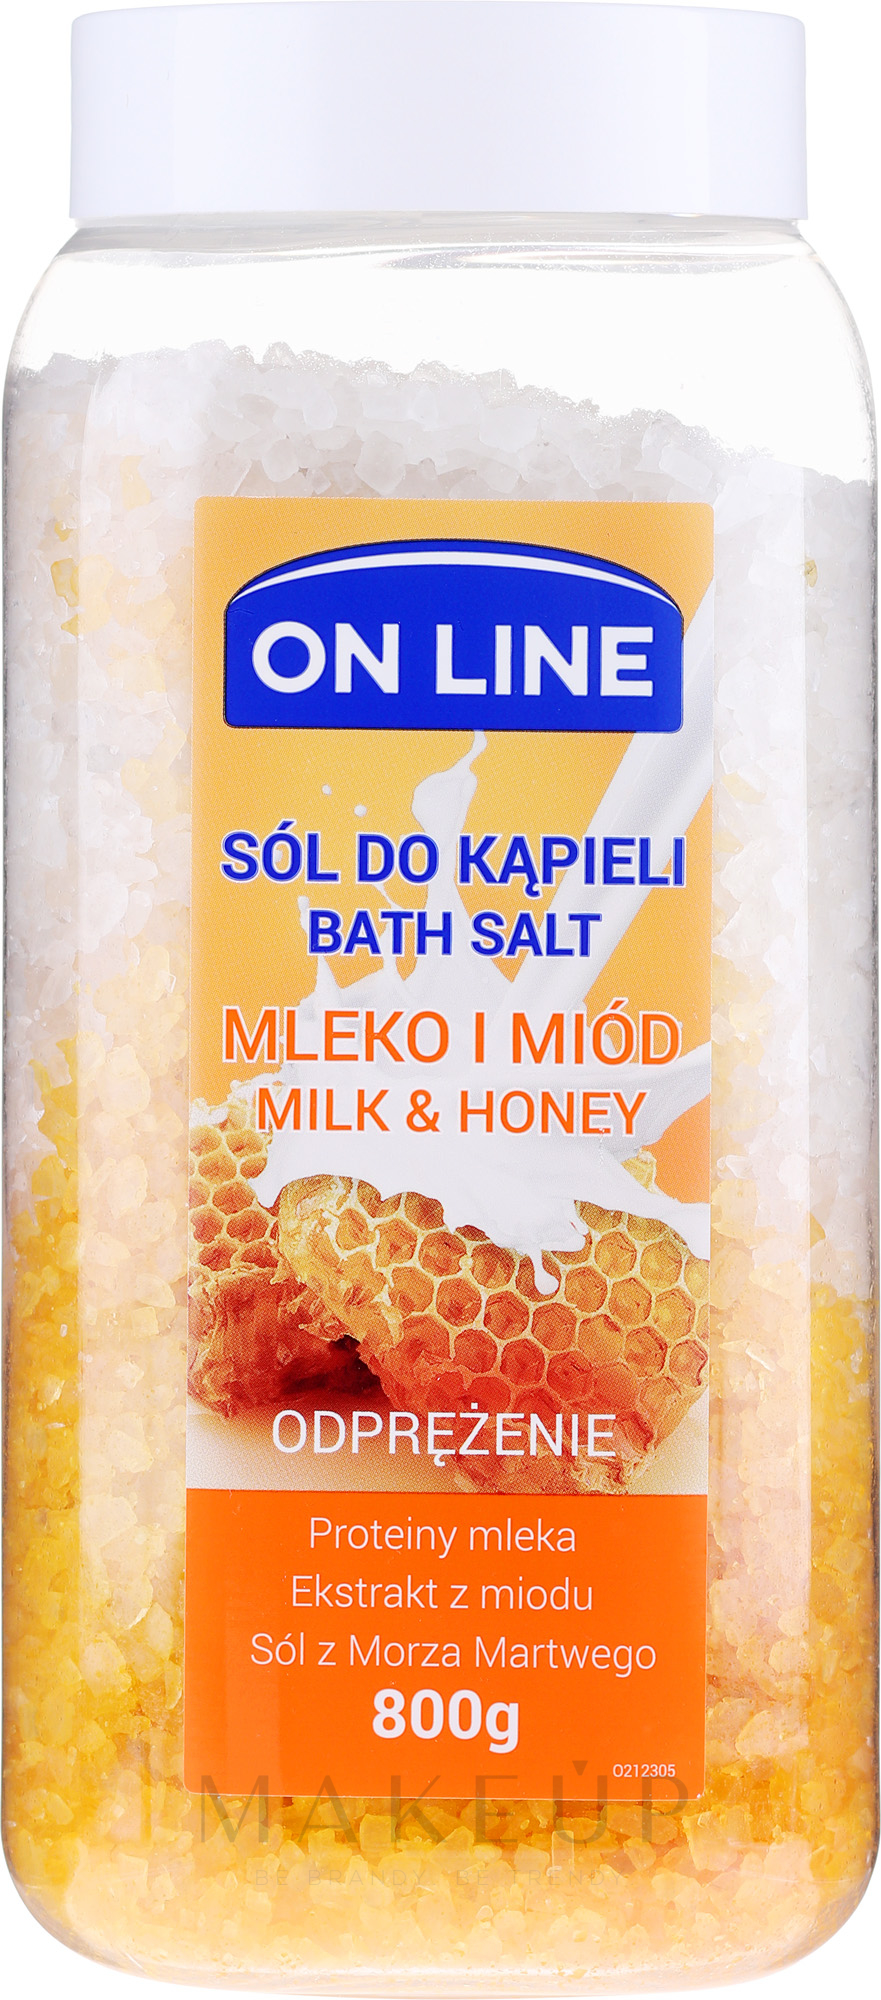 Badesalz mit Milch und Honig - On Line Milk & Honey Bath Salt — Foto 800 g